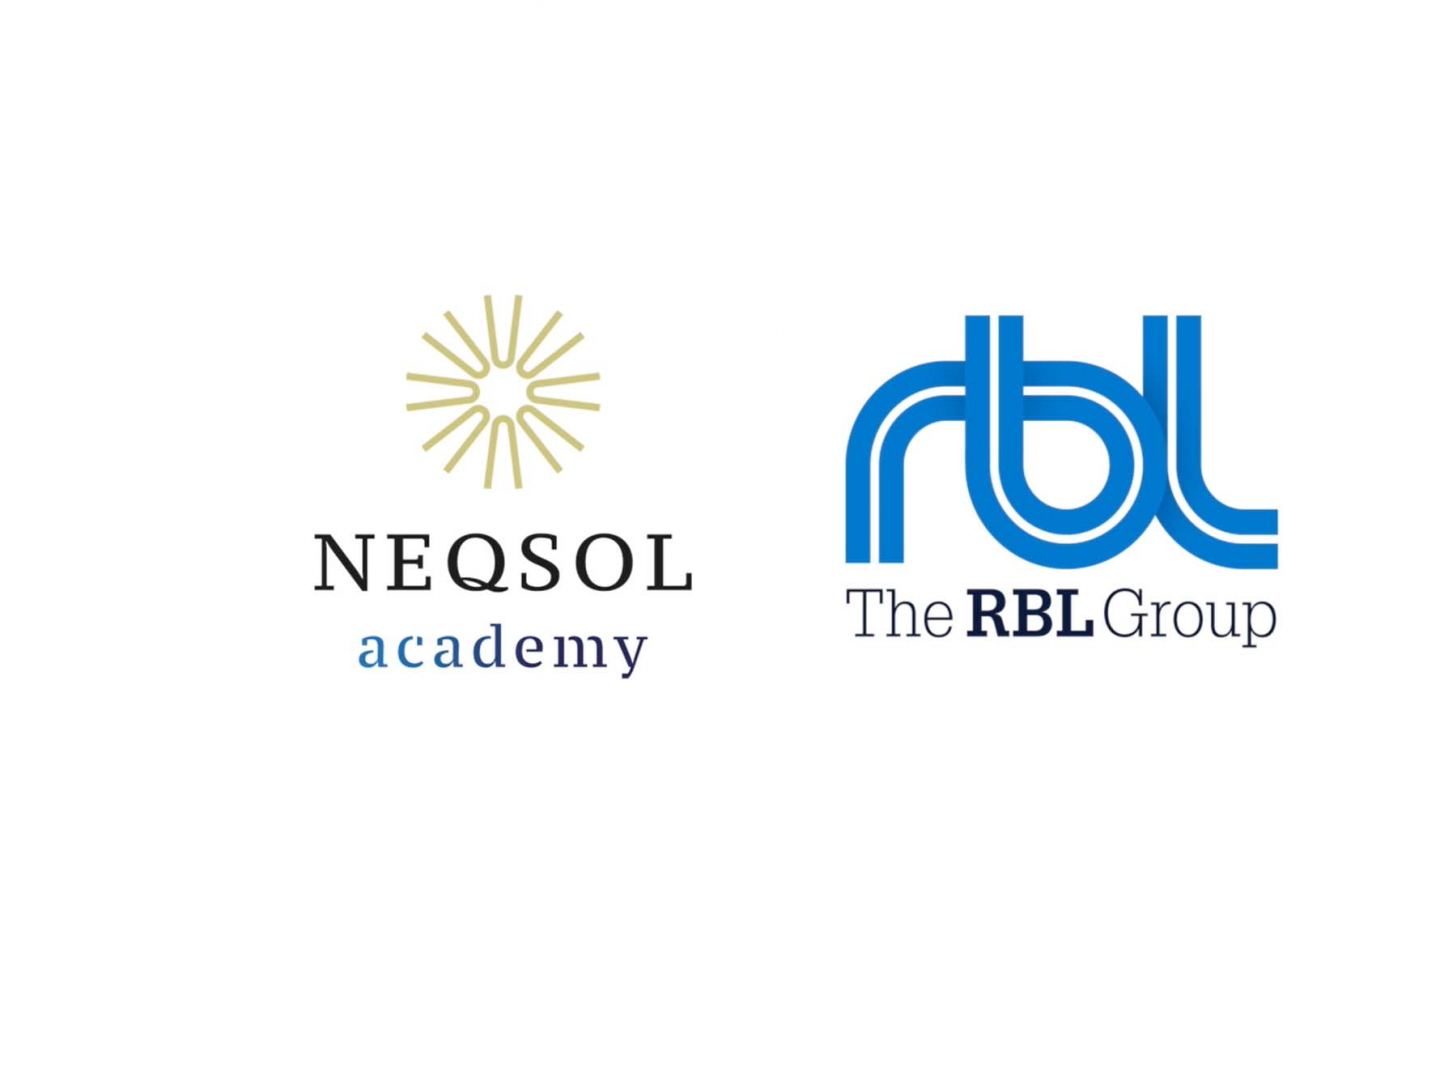 NEQSOL Holding провел программу “Стратегический HR бизнес-партнер" для HR профессионалов